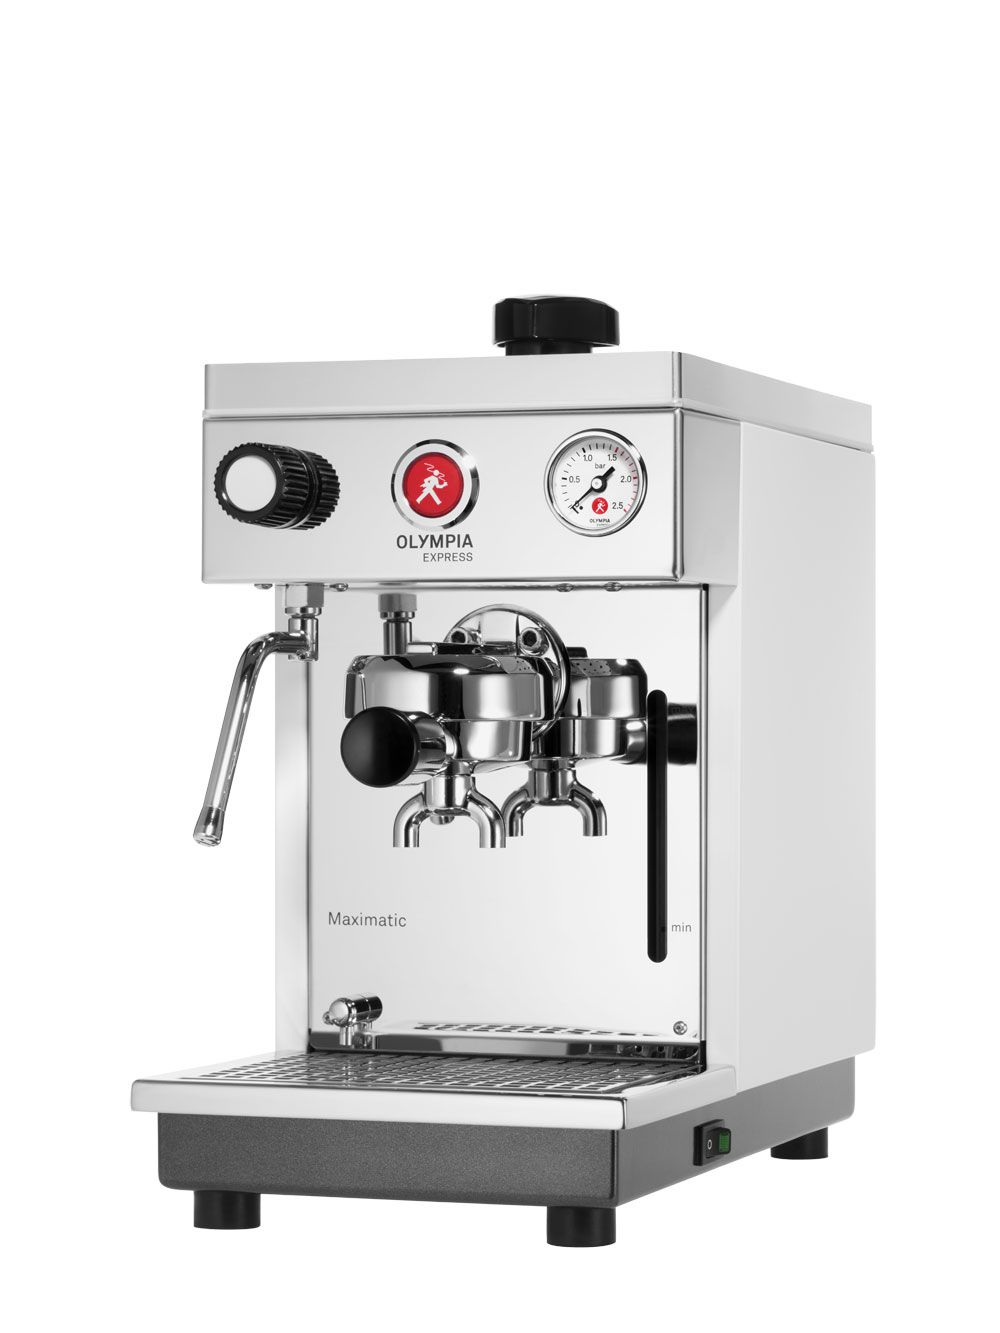 Máquina de café espresso Olympia Express Maximatic Antracita